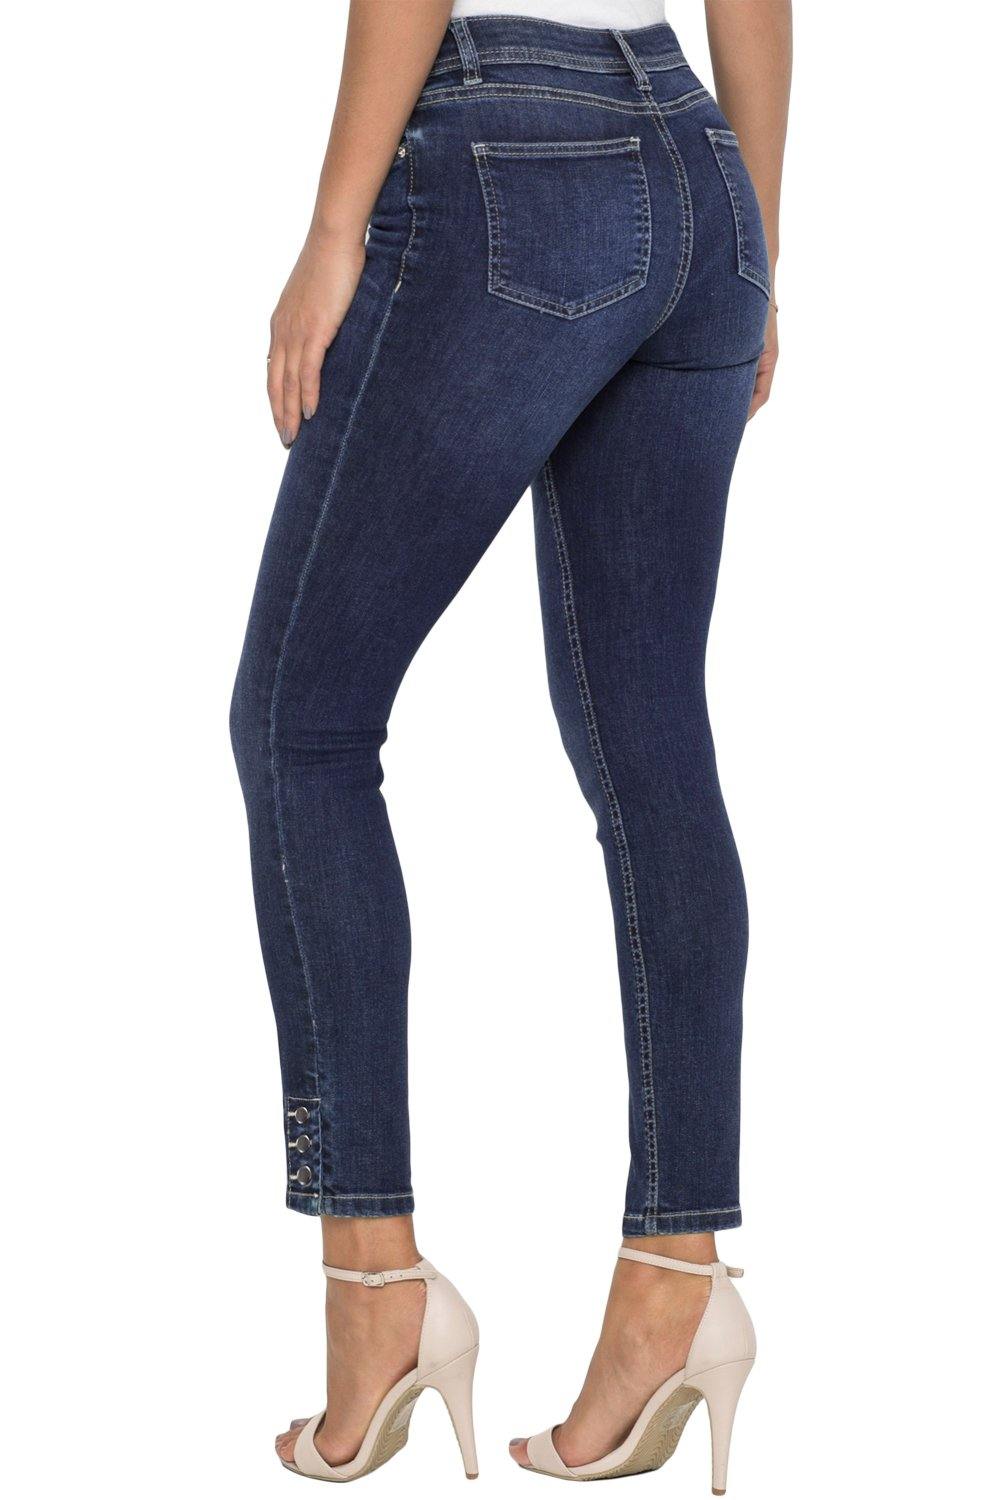 Button Detail Dark Blue Wash Skinny Jeans - L & M Kee, LLC